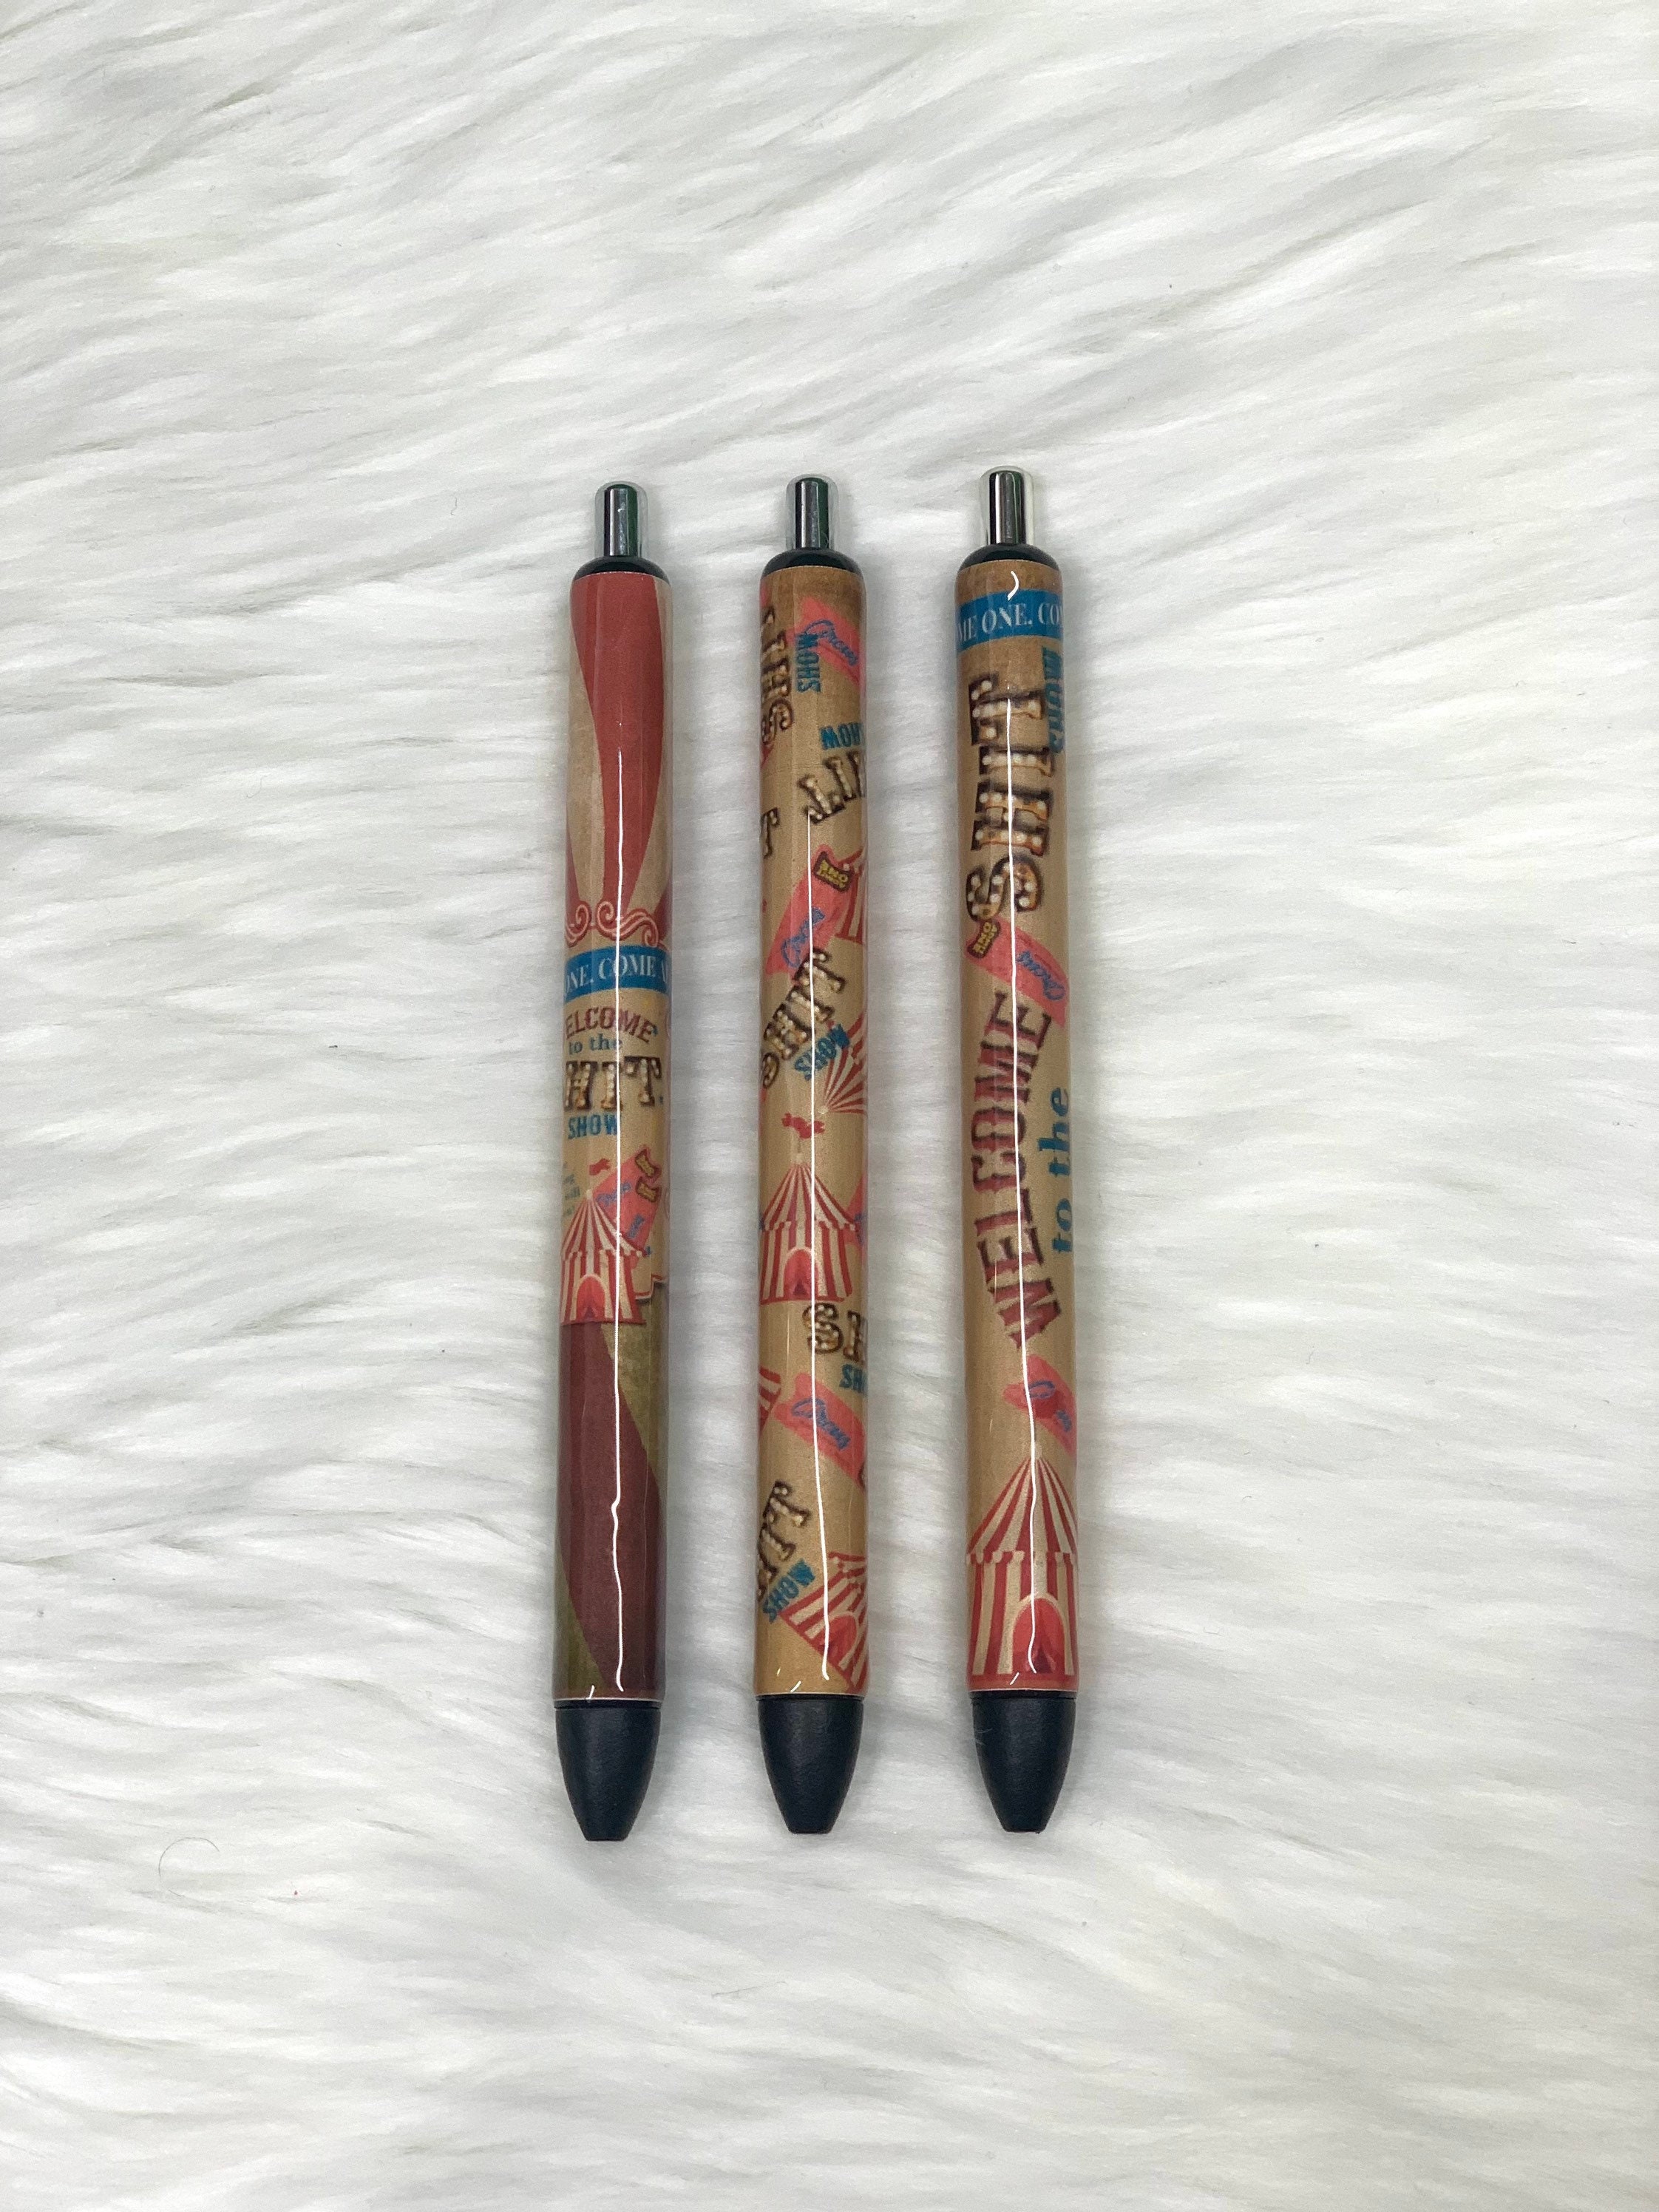 5Pcs MAMA Customer Service Pens Push Type Shit-show Pens Plastic